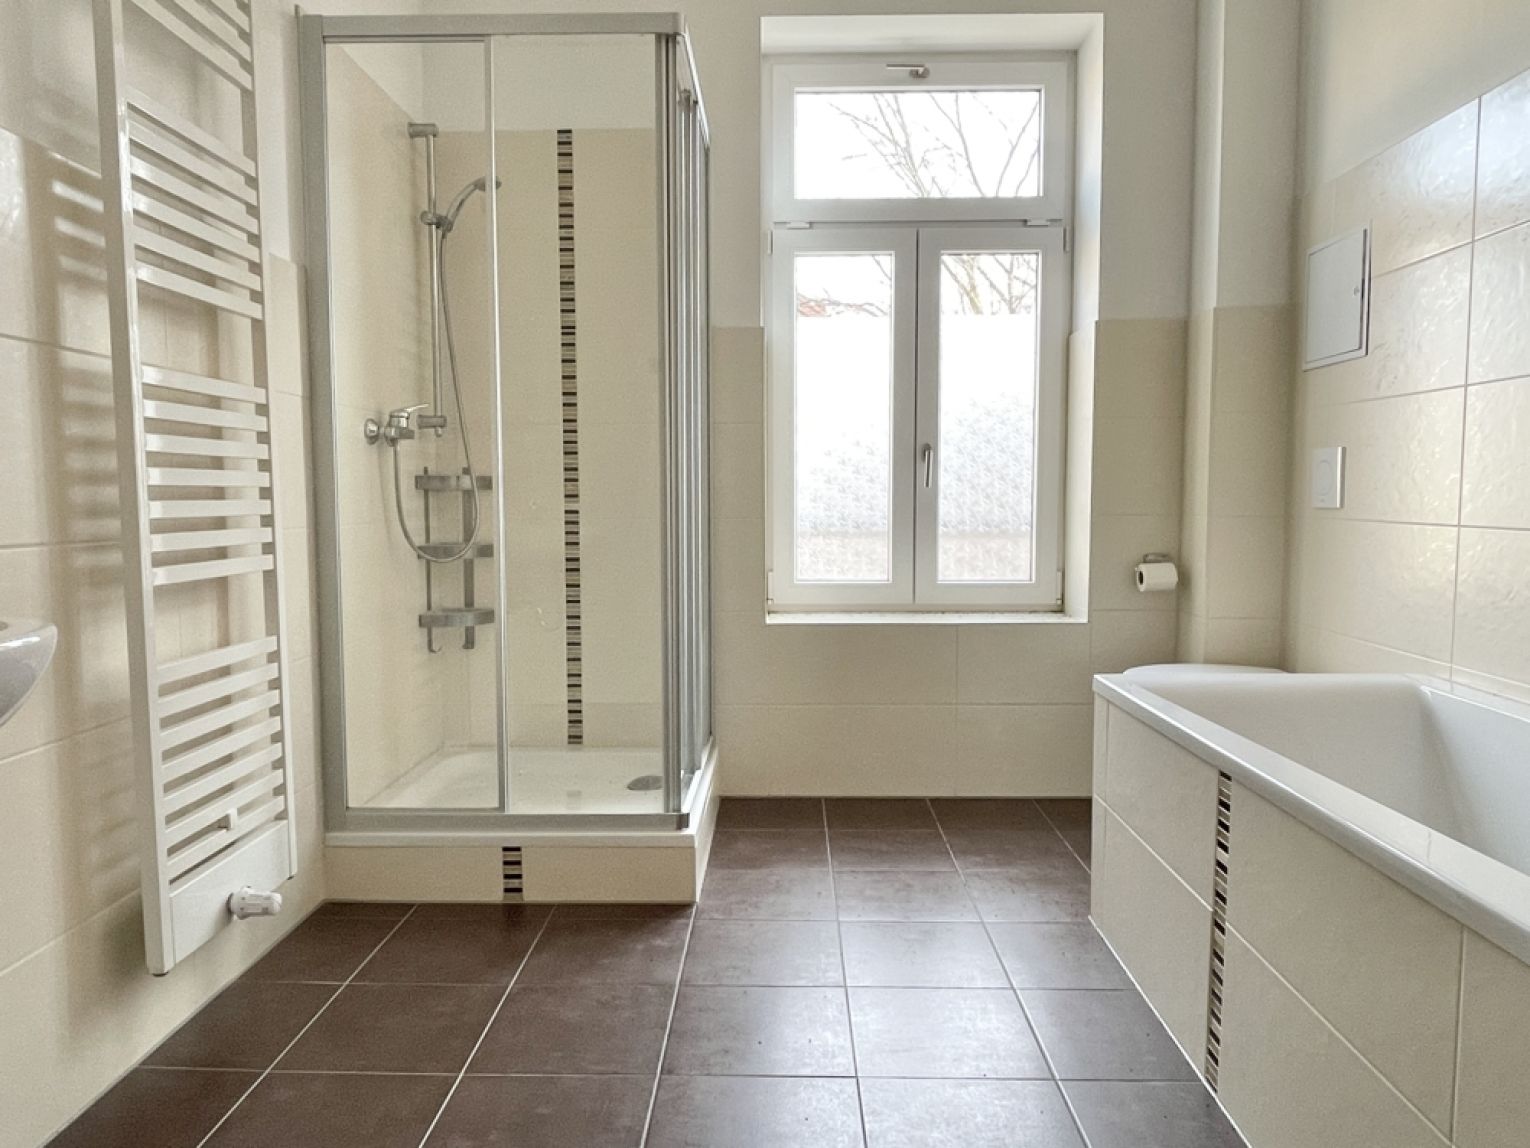 3 Zimmer • modernes Bad mit Wanne und Dusche • Laminat • tolle Ausstattung • stilvolles Haus • Miete